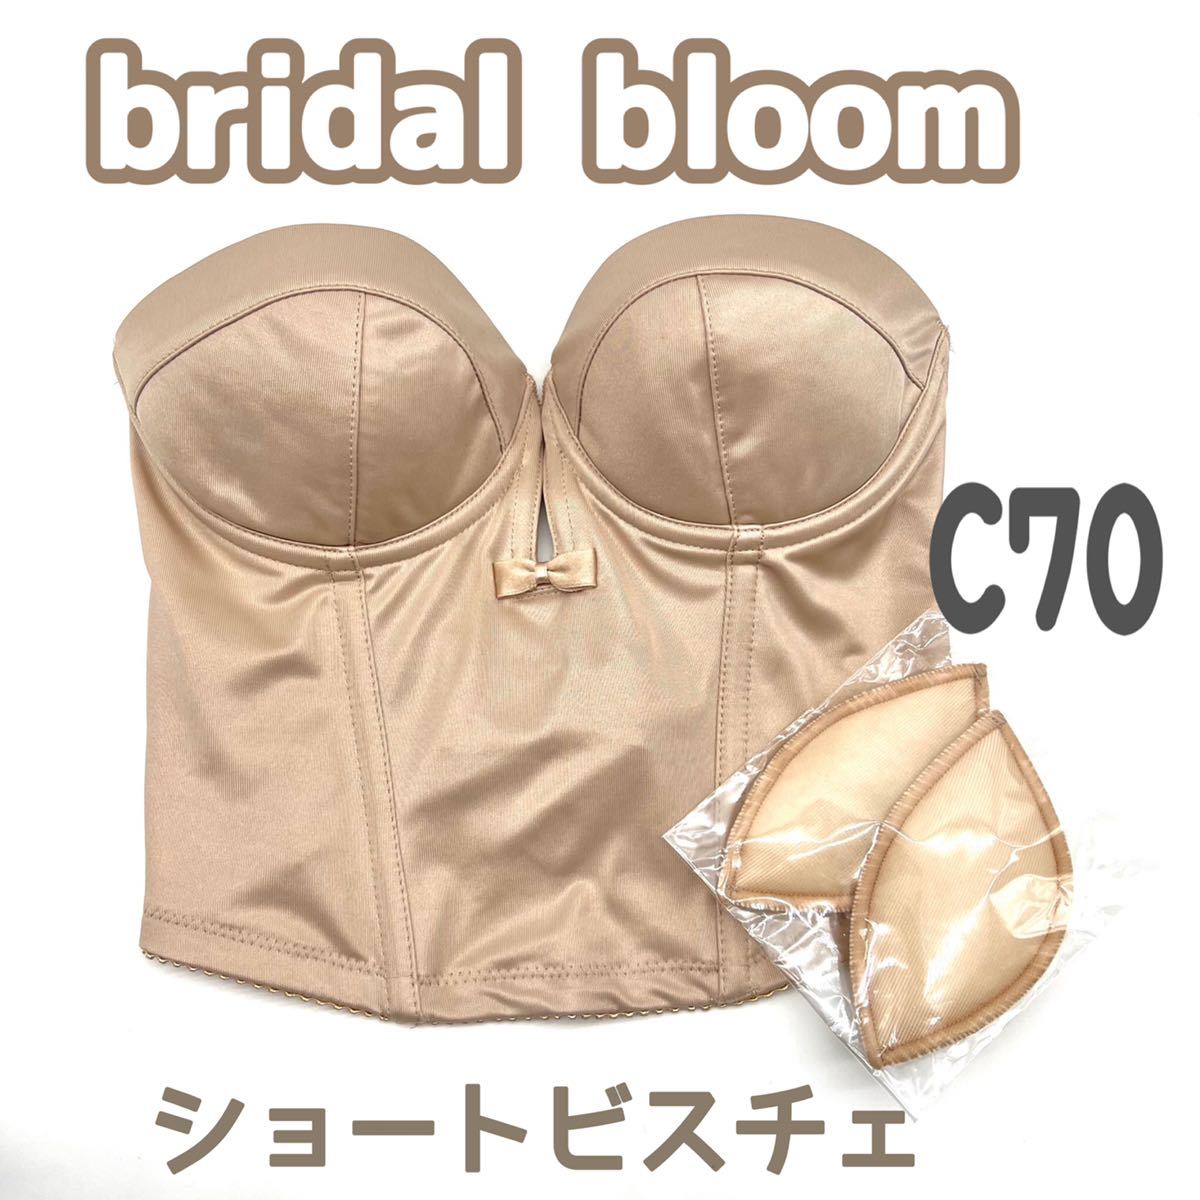 2021高い素材 bridal bloom ブライダルブルーム ショートビスチェ B70 